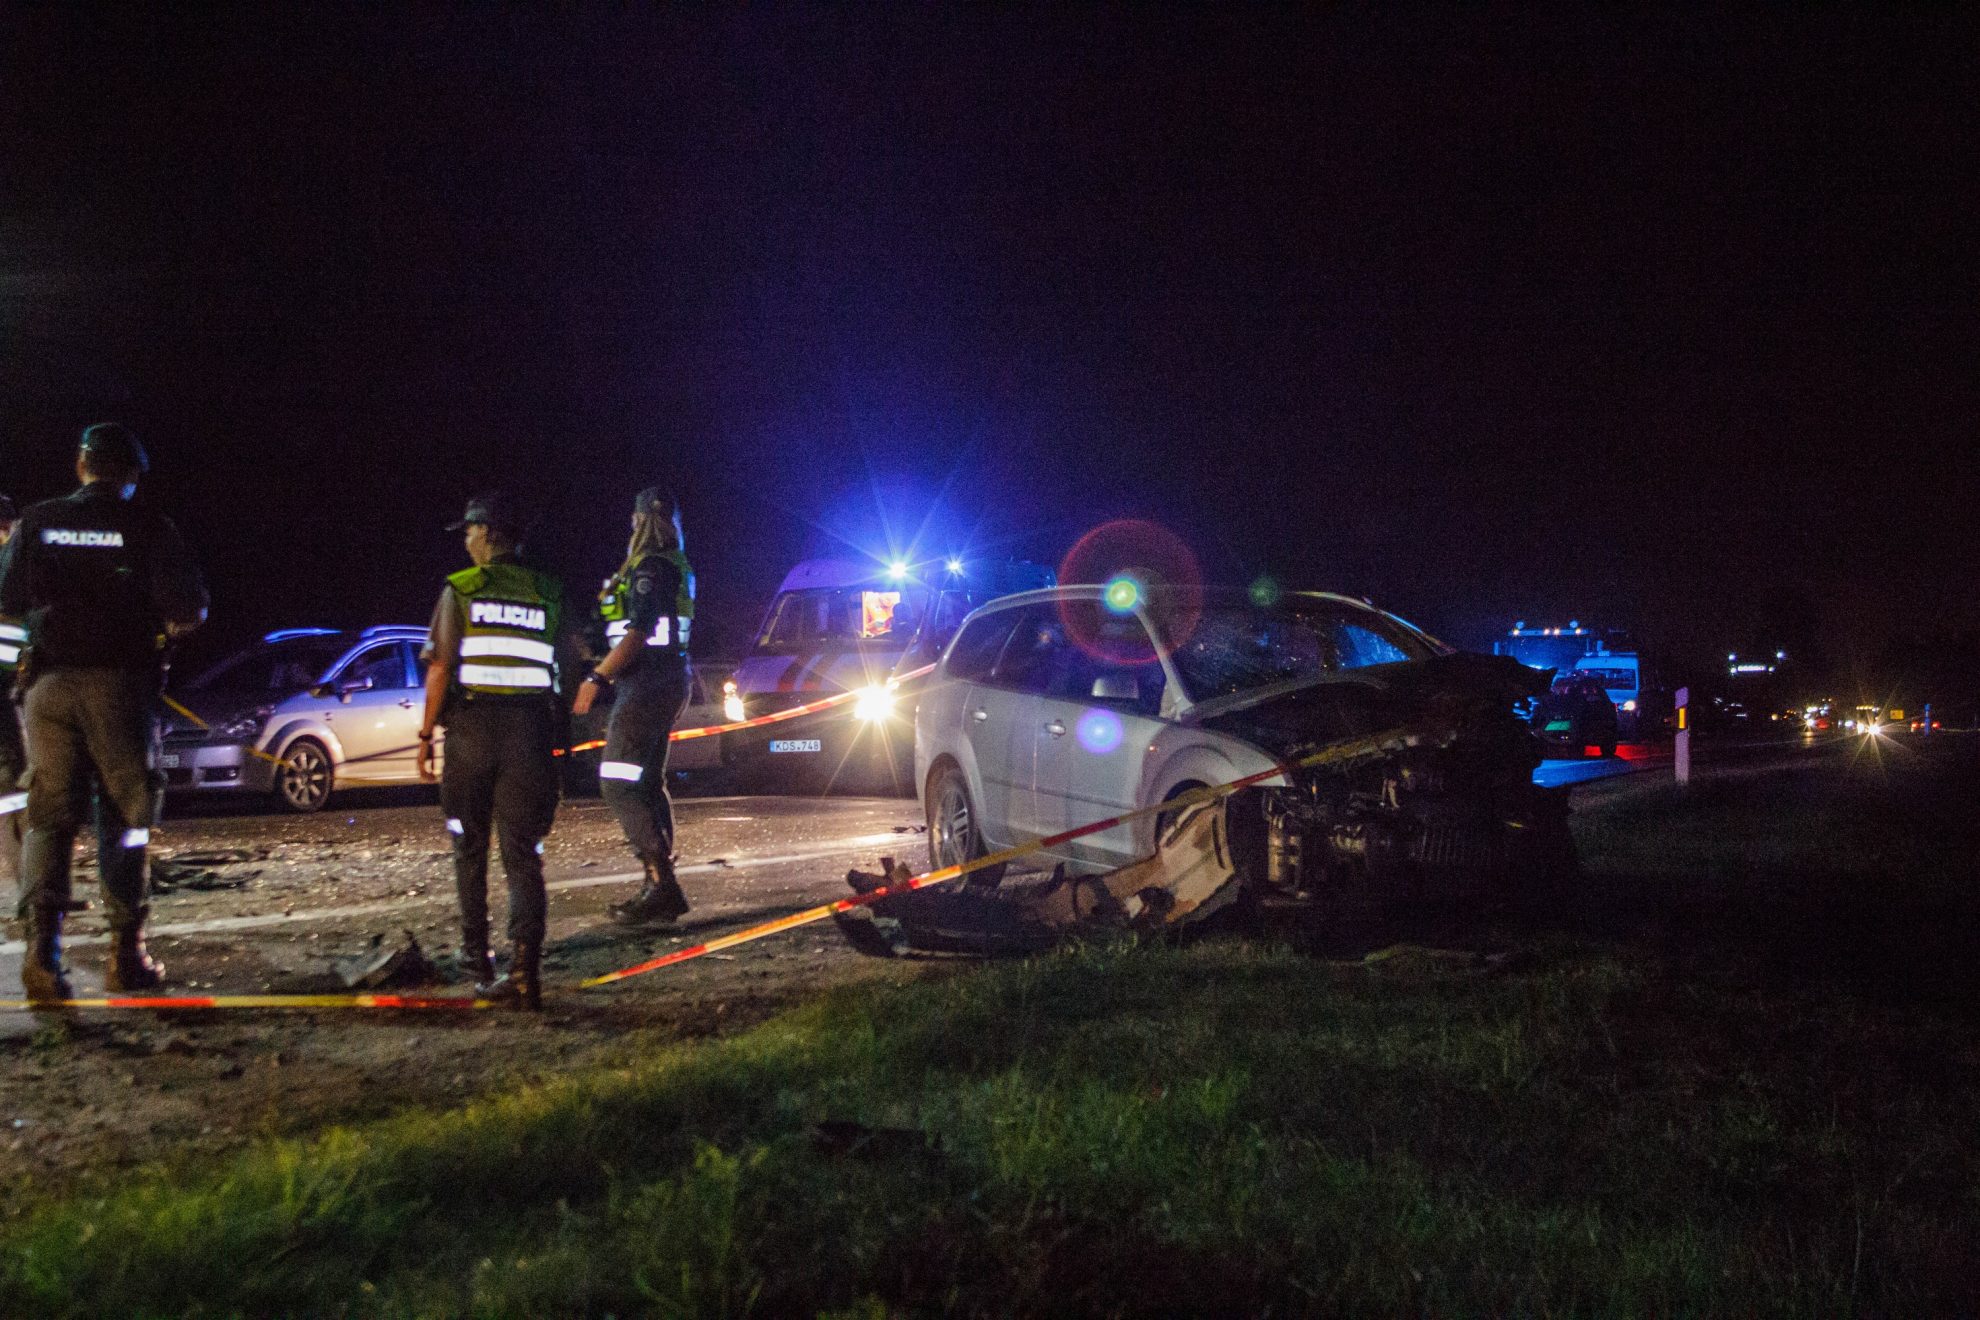 Penktadienio vakaras pažymėtas kraupia avarija kelyje Panevėžys – Šiauliai, netoli „Orlen“ degalinės. Pirminiais duomenimis, susidūrė du lengvieji automobiliai.